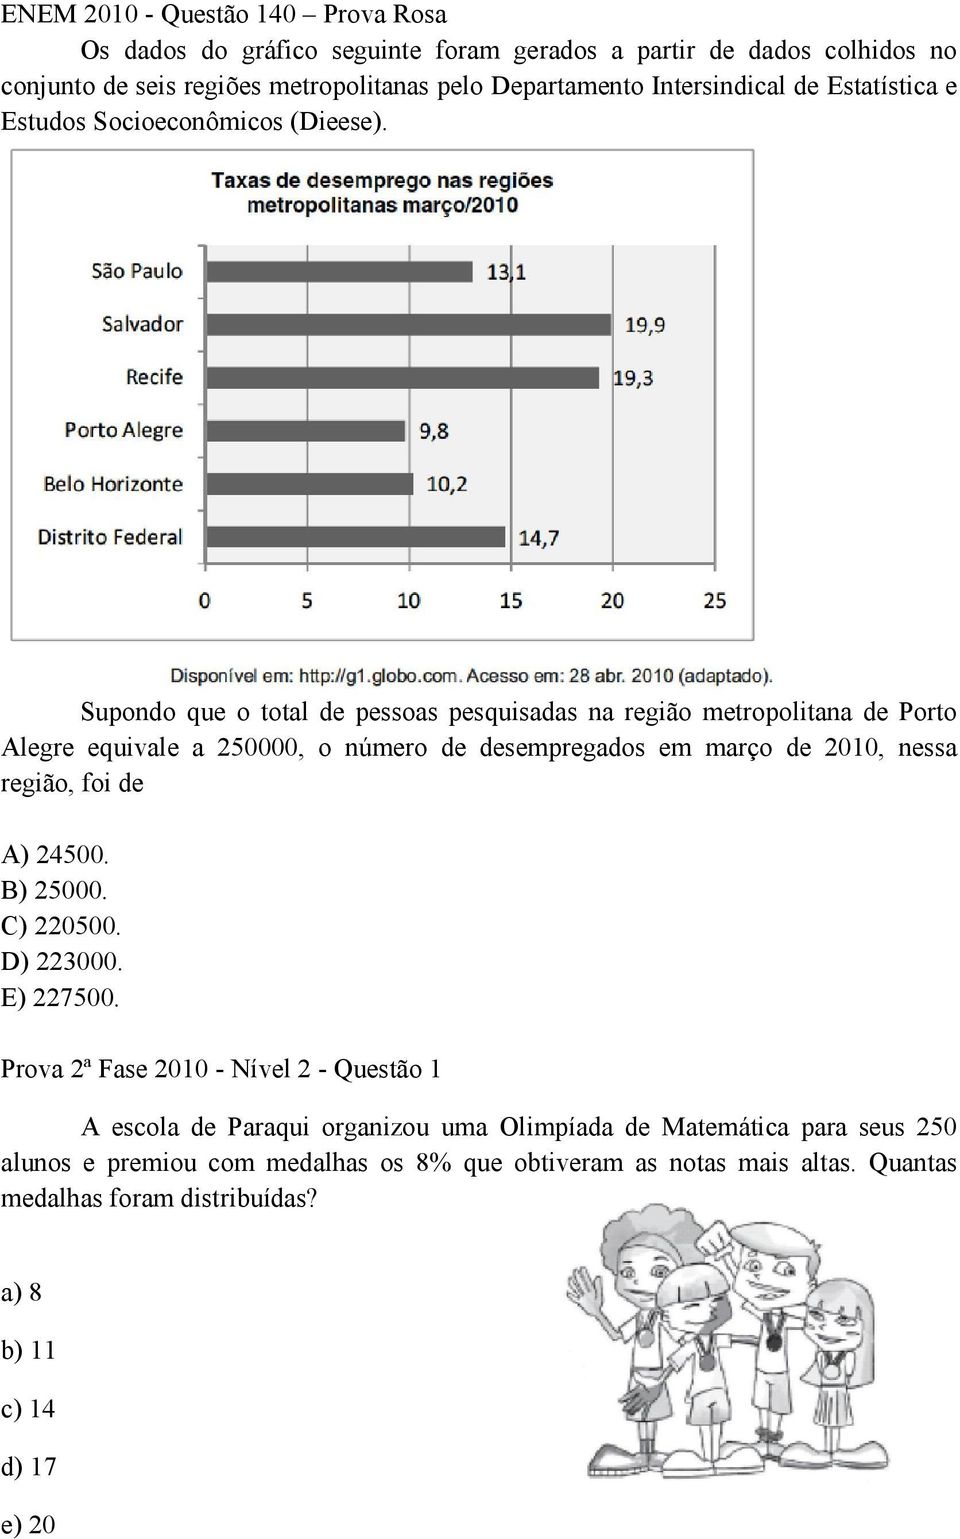 Supondo que o total de pessoas pesquisadas na região metropolitana de Porto Alegre equivale a 250000, o número de desempregados em março de 2010, nessa região, foi de A)